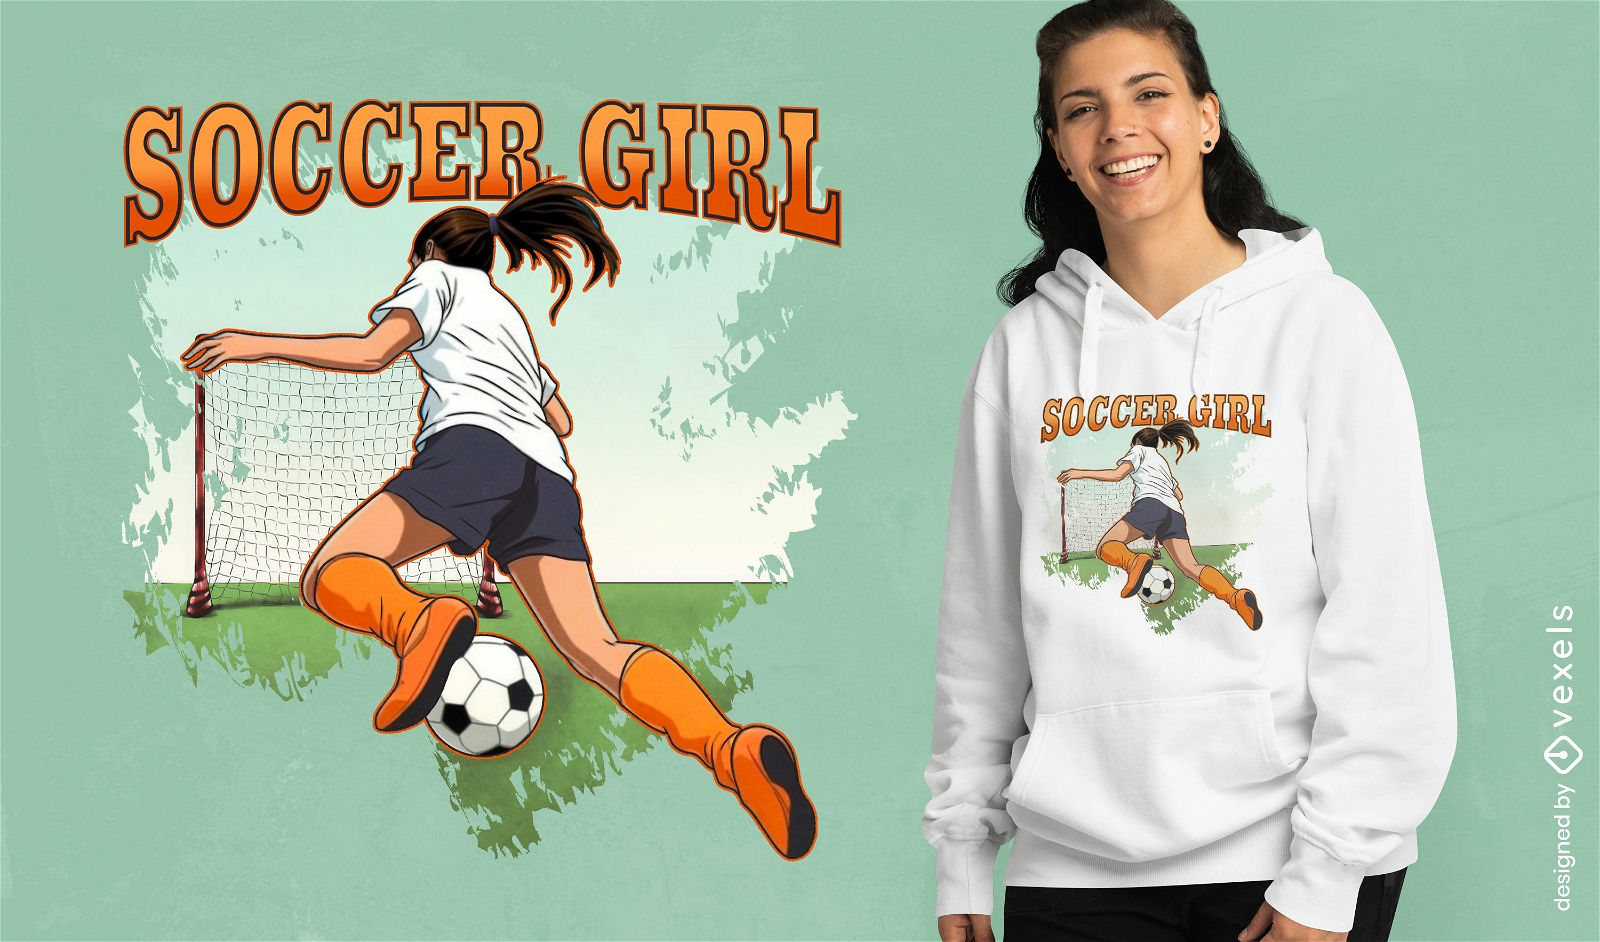 Diseño de camiseta de acción de chica de fútbol.